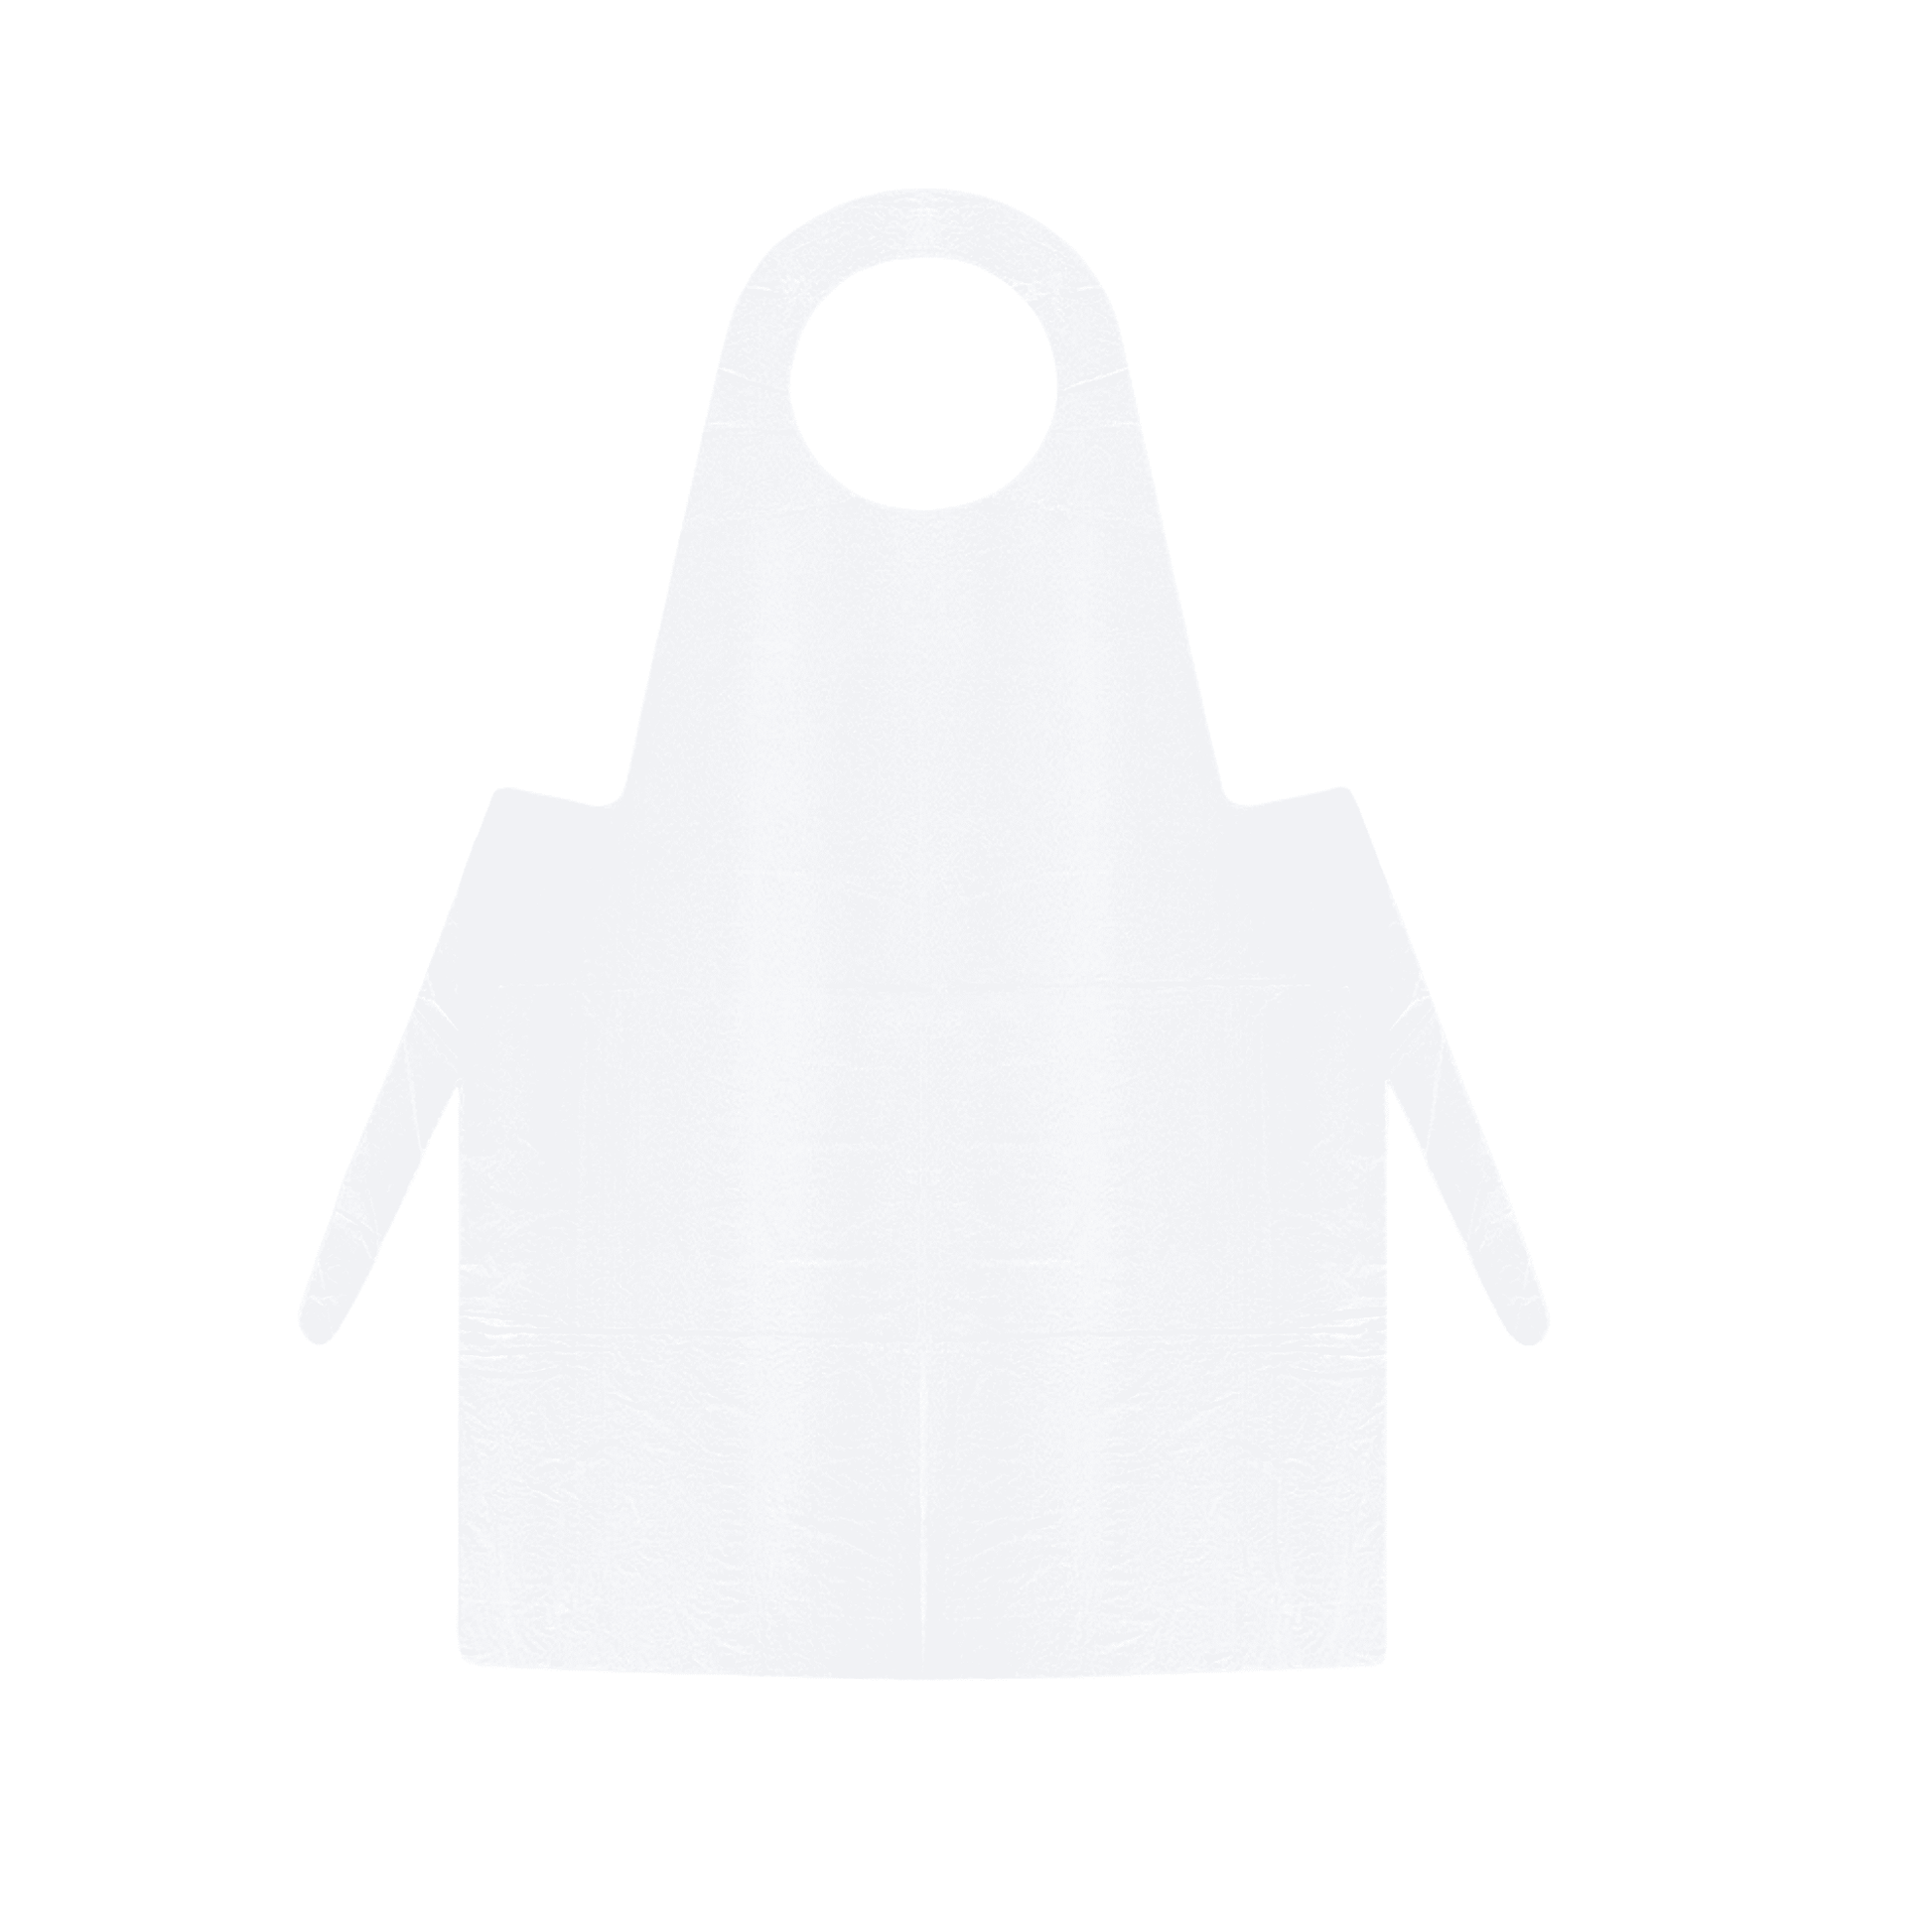 Eine einfache, schlichte weiße Schürze aus LDPE ohne Muster oder Logos, abgebildet in der Vorderansicht. Die Meditrade PE Einmalschürze (weiß) - 100 Stück verfügt über eine Halsschlaufe und zwei lange Bänder in der Taille.